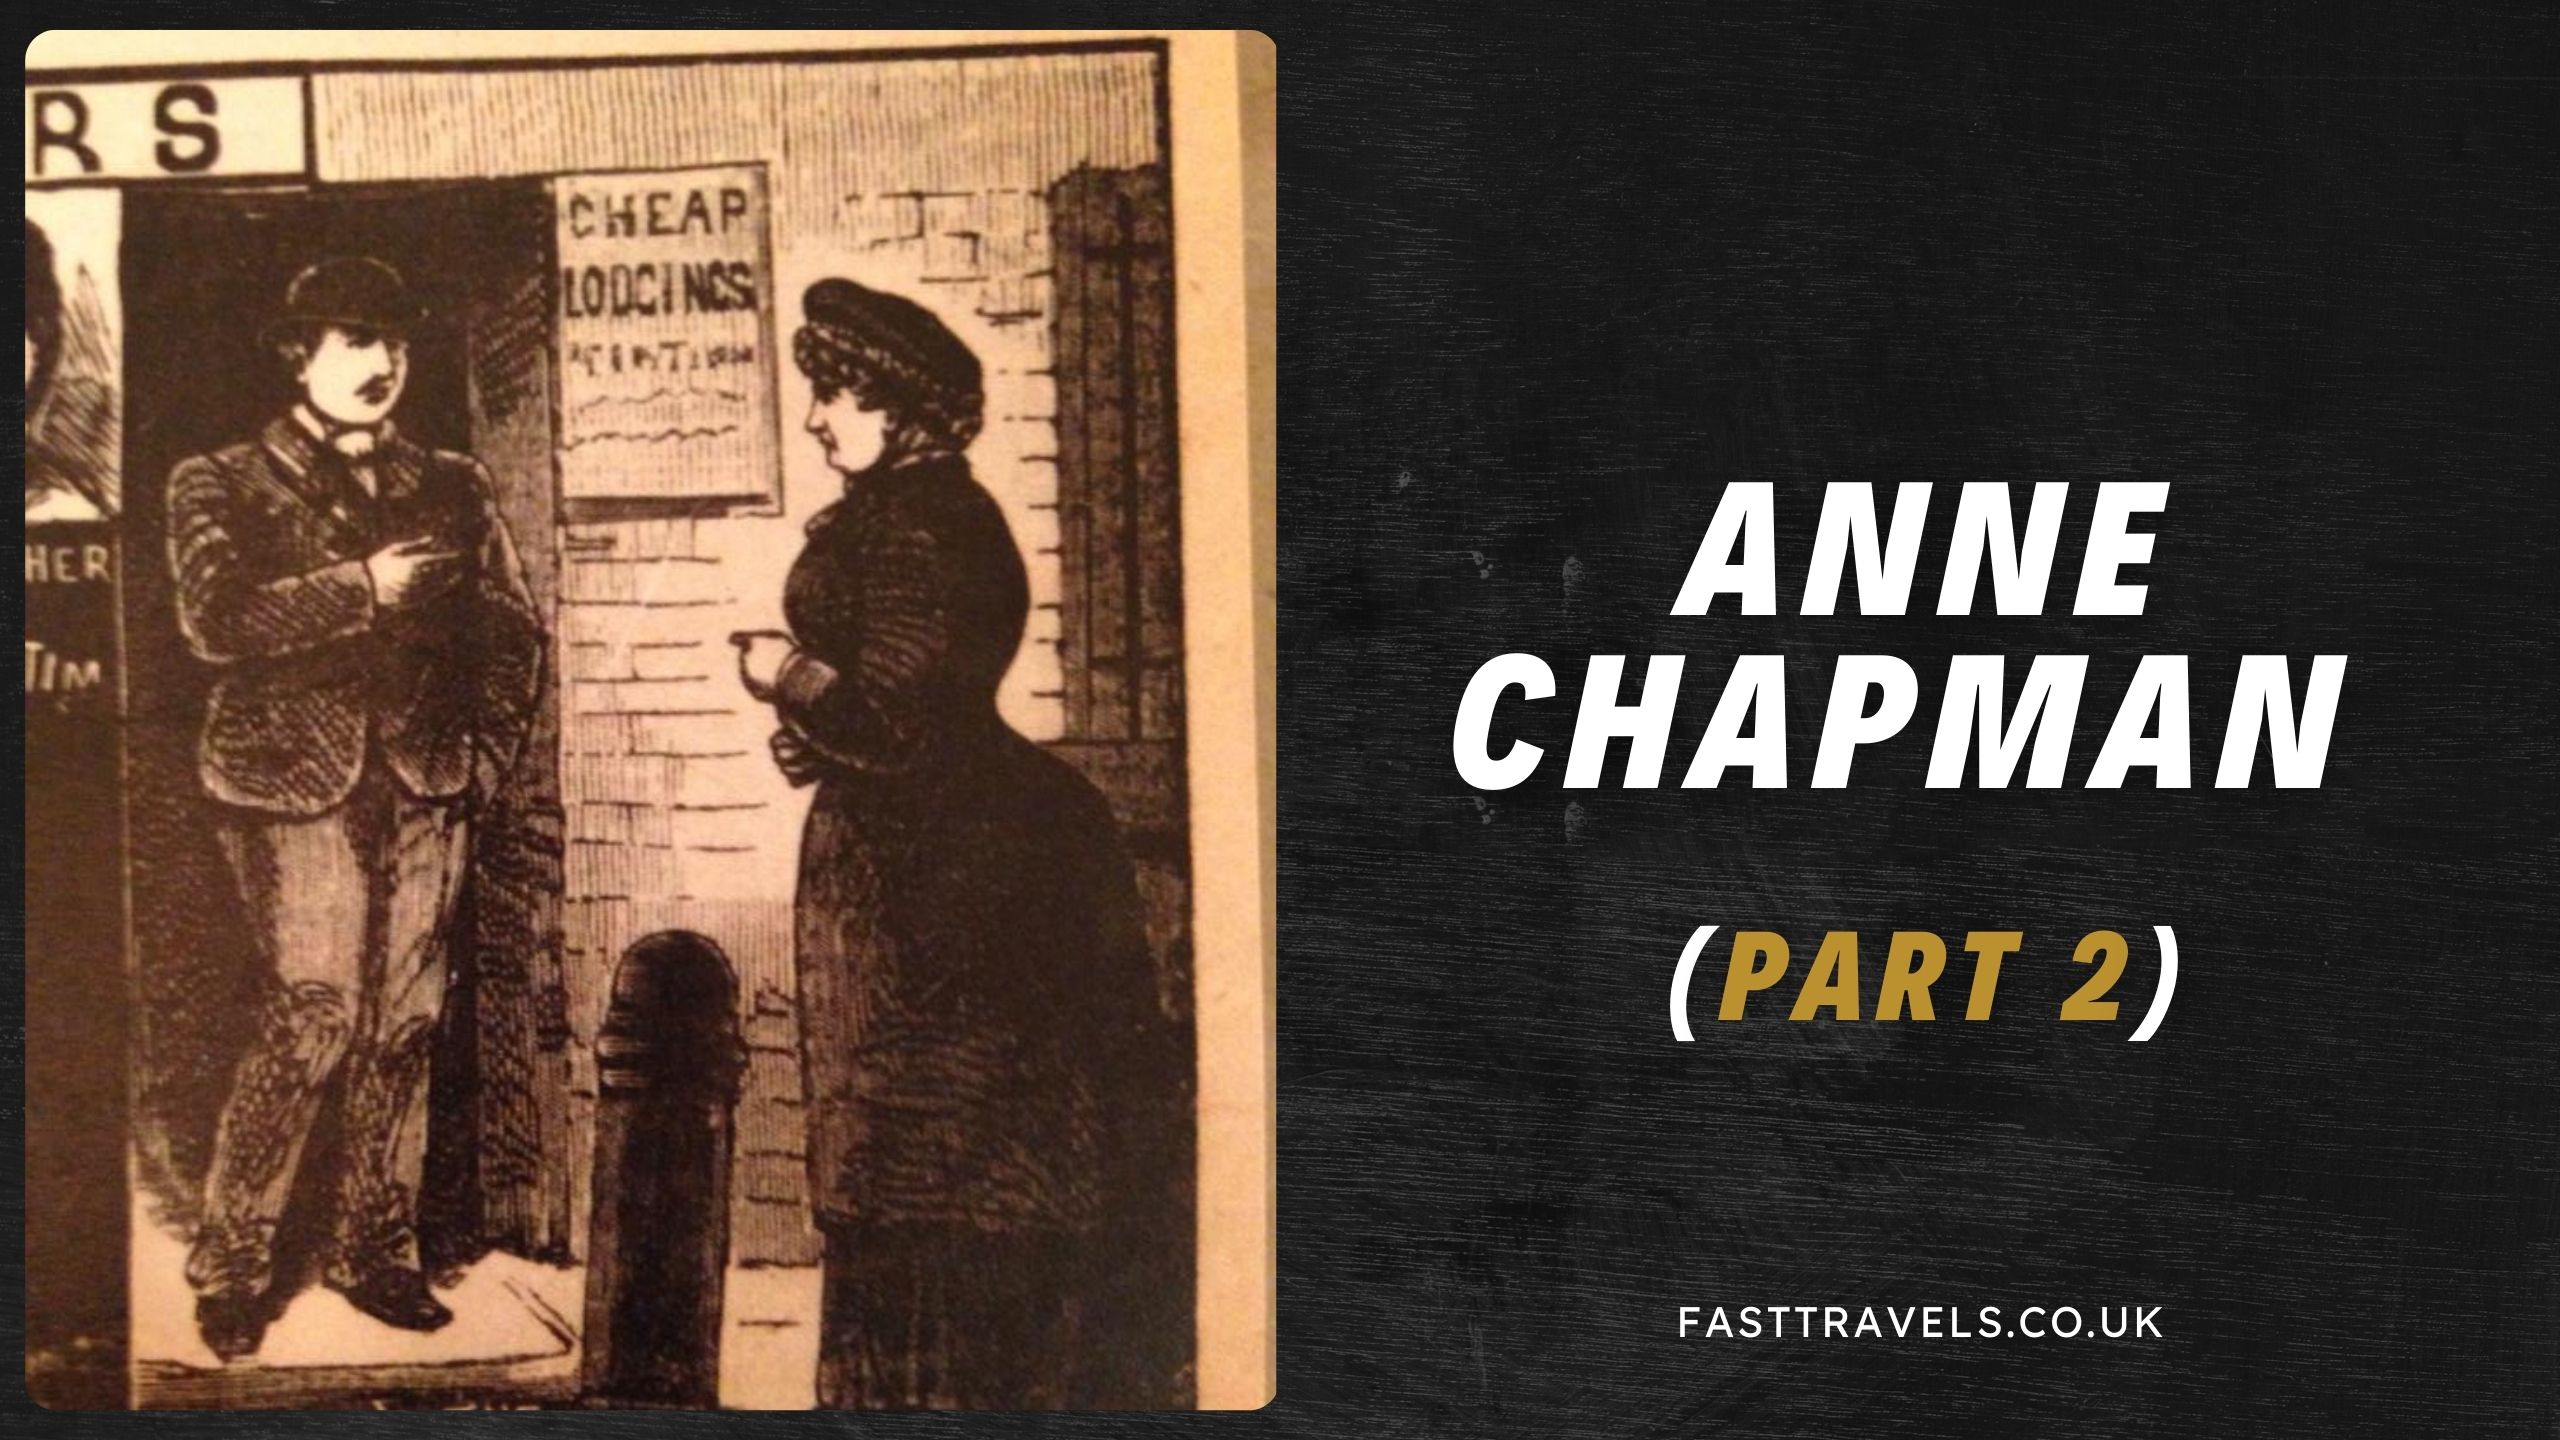 Annie Chapman